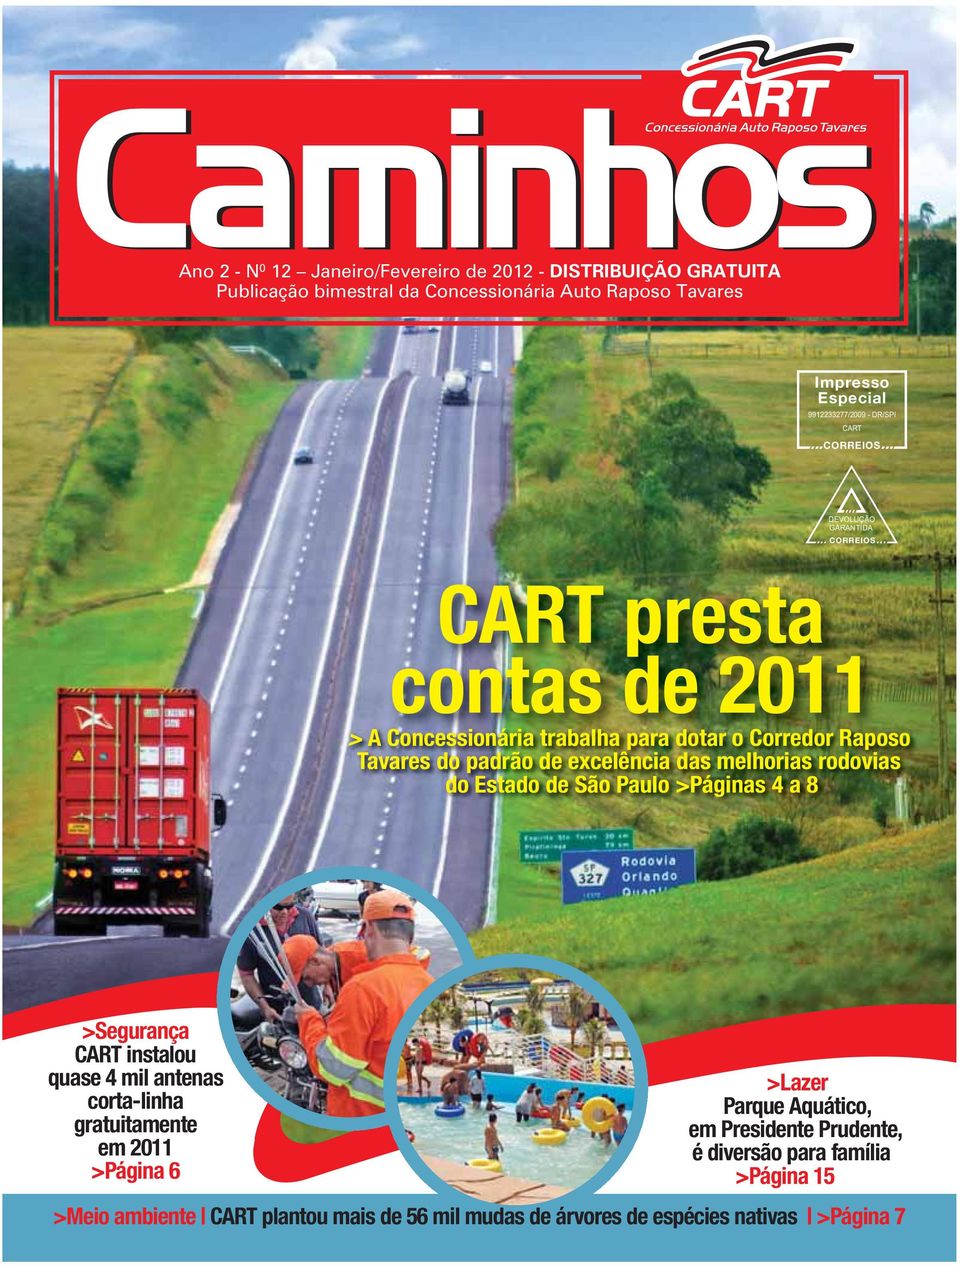 padrão de excelência das melhorias rodovias do Estado de São Paulo >Páginas 4 a 8 >Segurança CART instalou quase 4 mil antenas corta-linha gratuitamente em 2011